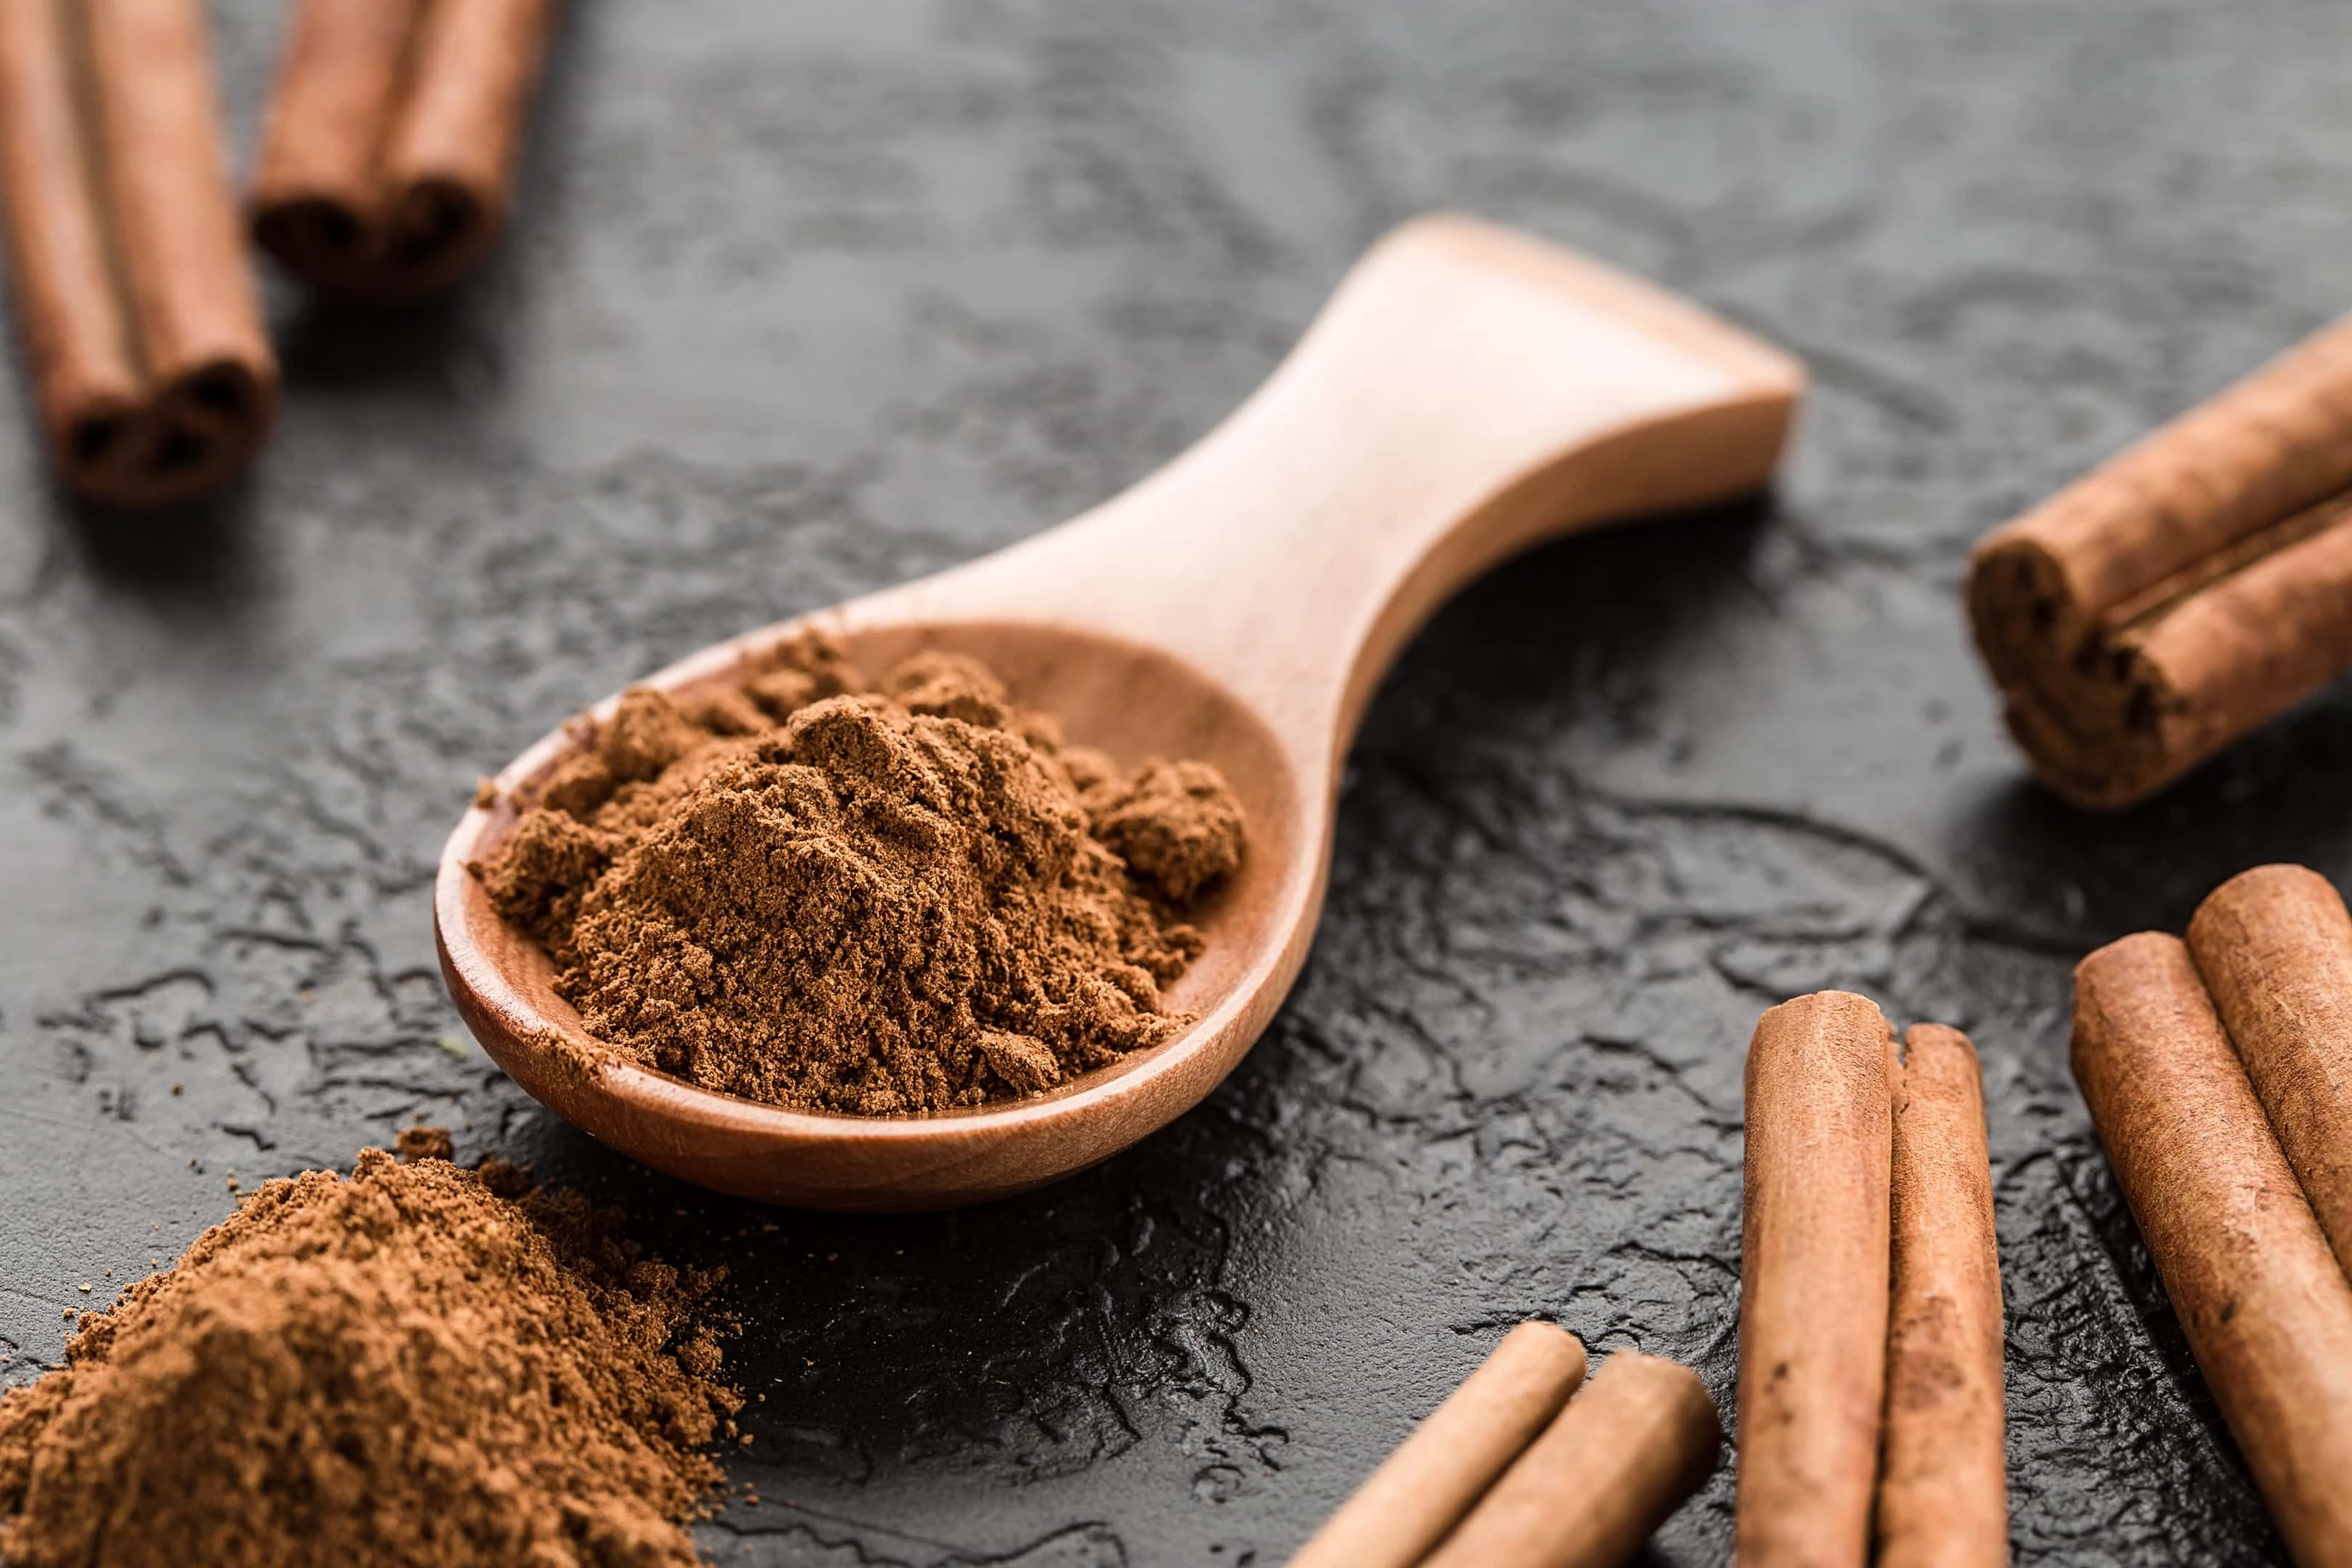 Ground cinnamon powder in wooden spoon